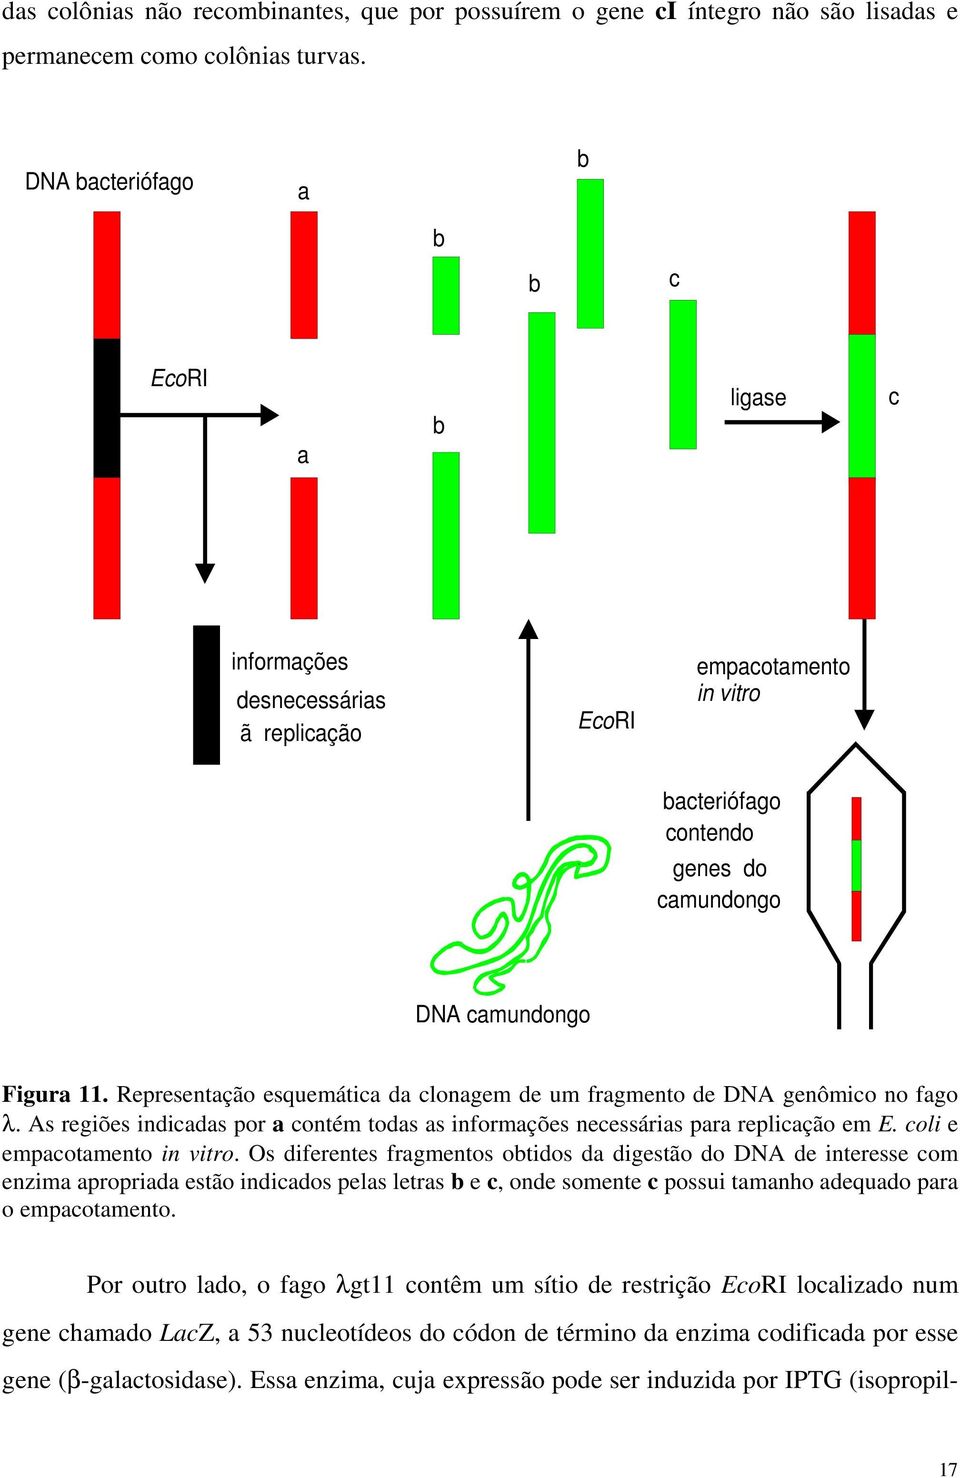 Repreentação equemática da clonagem de um fragmento de DNA genômico no fago λ. A regiõe indicada por a contém toda a informaçõe neceária para replicação em E. coli e empacotamento in vitro.